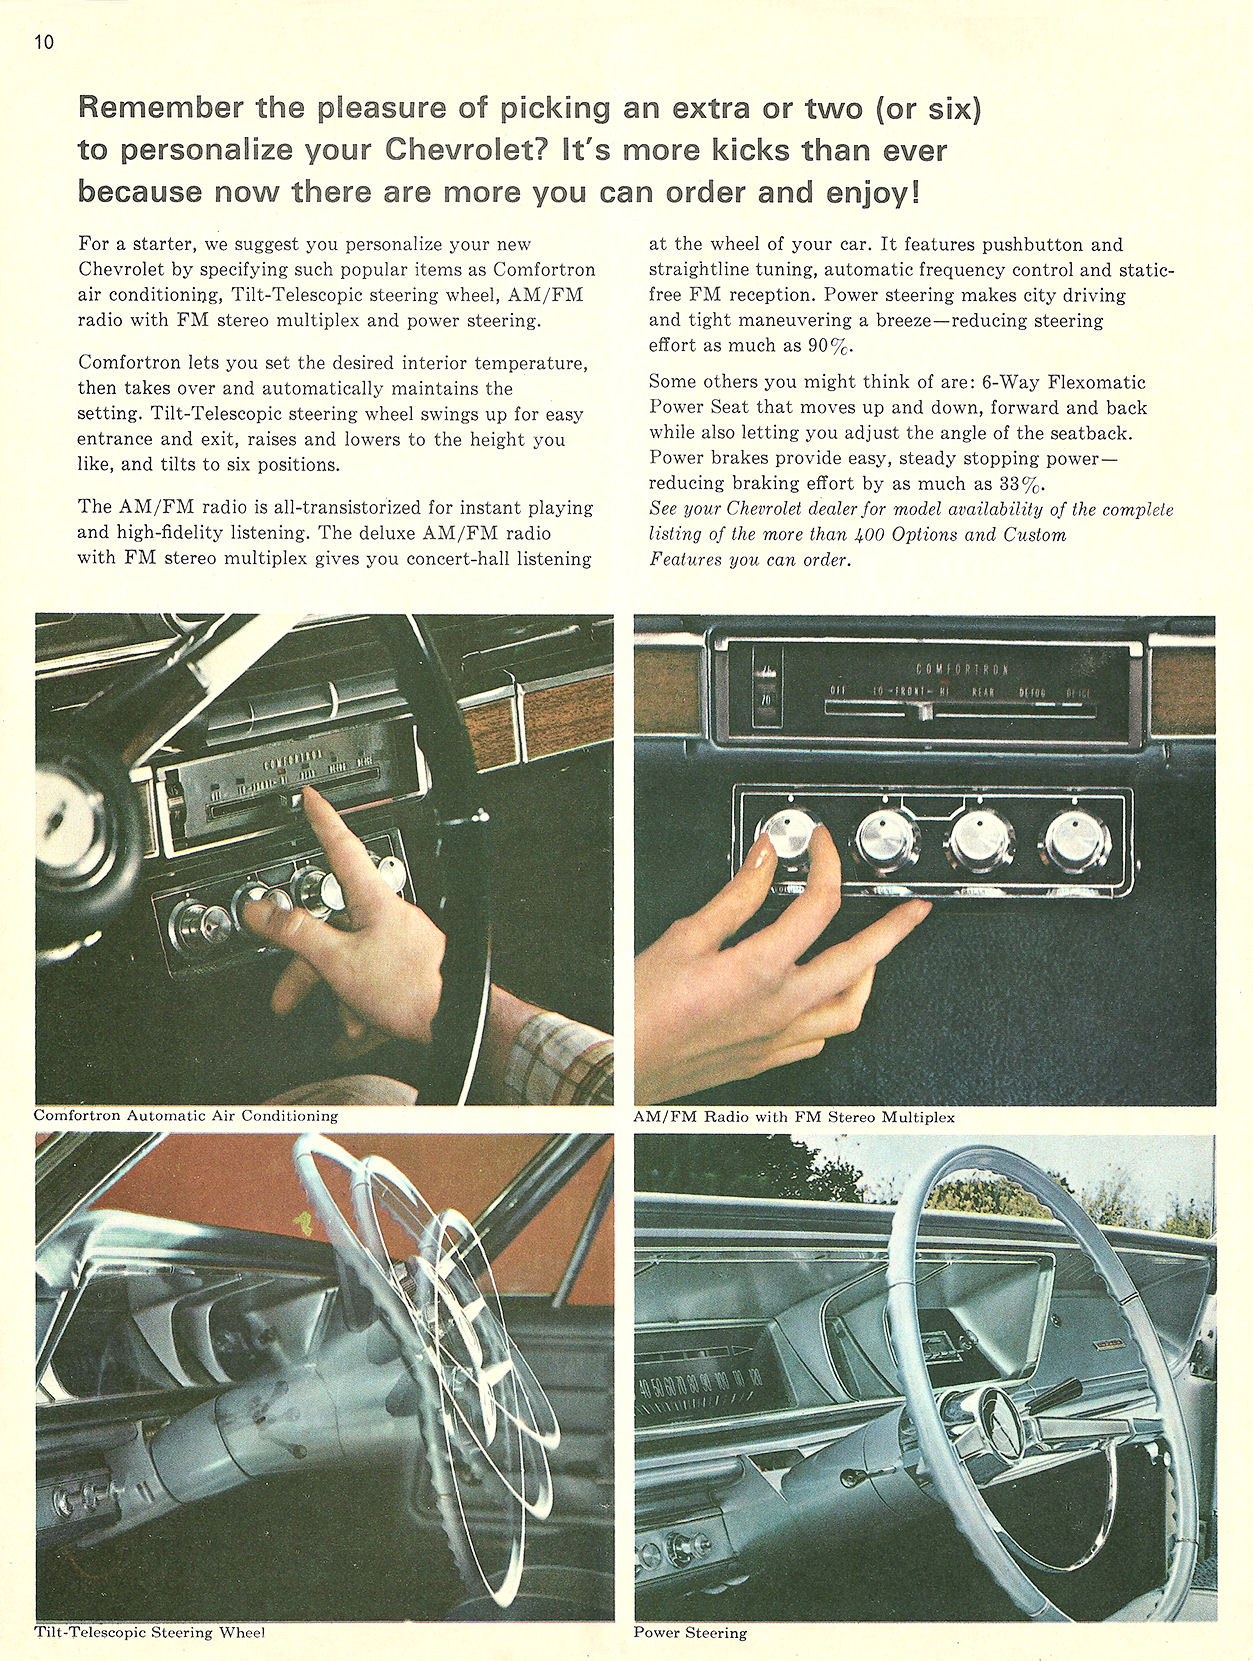 1966_Chevrolet_Great_Way_Mailer-10